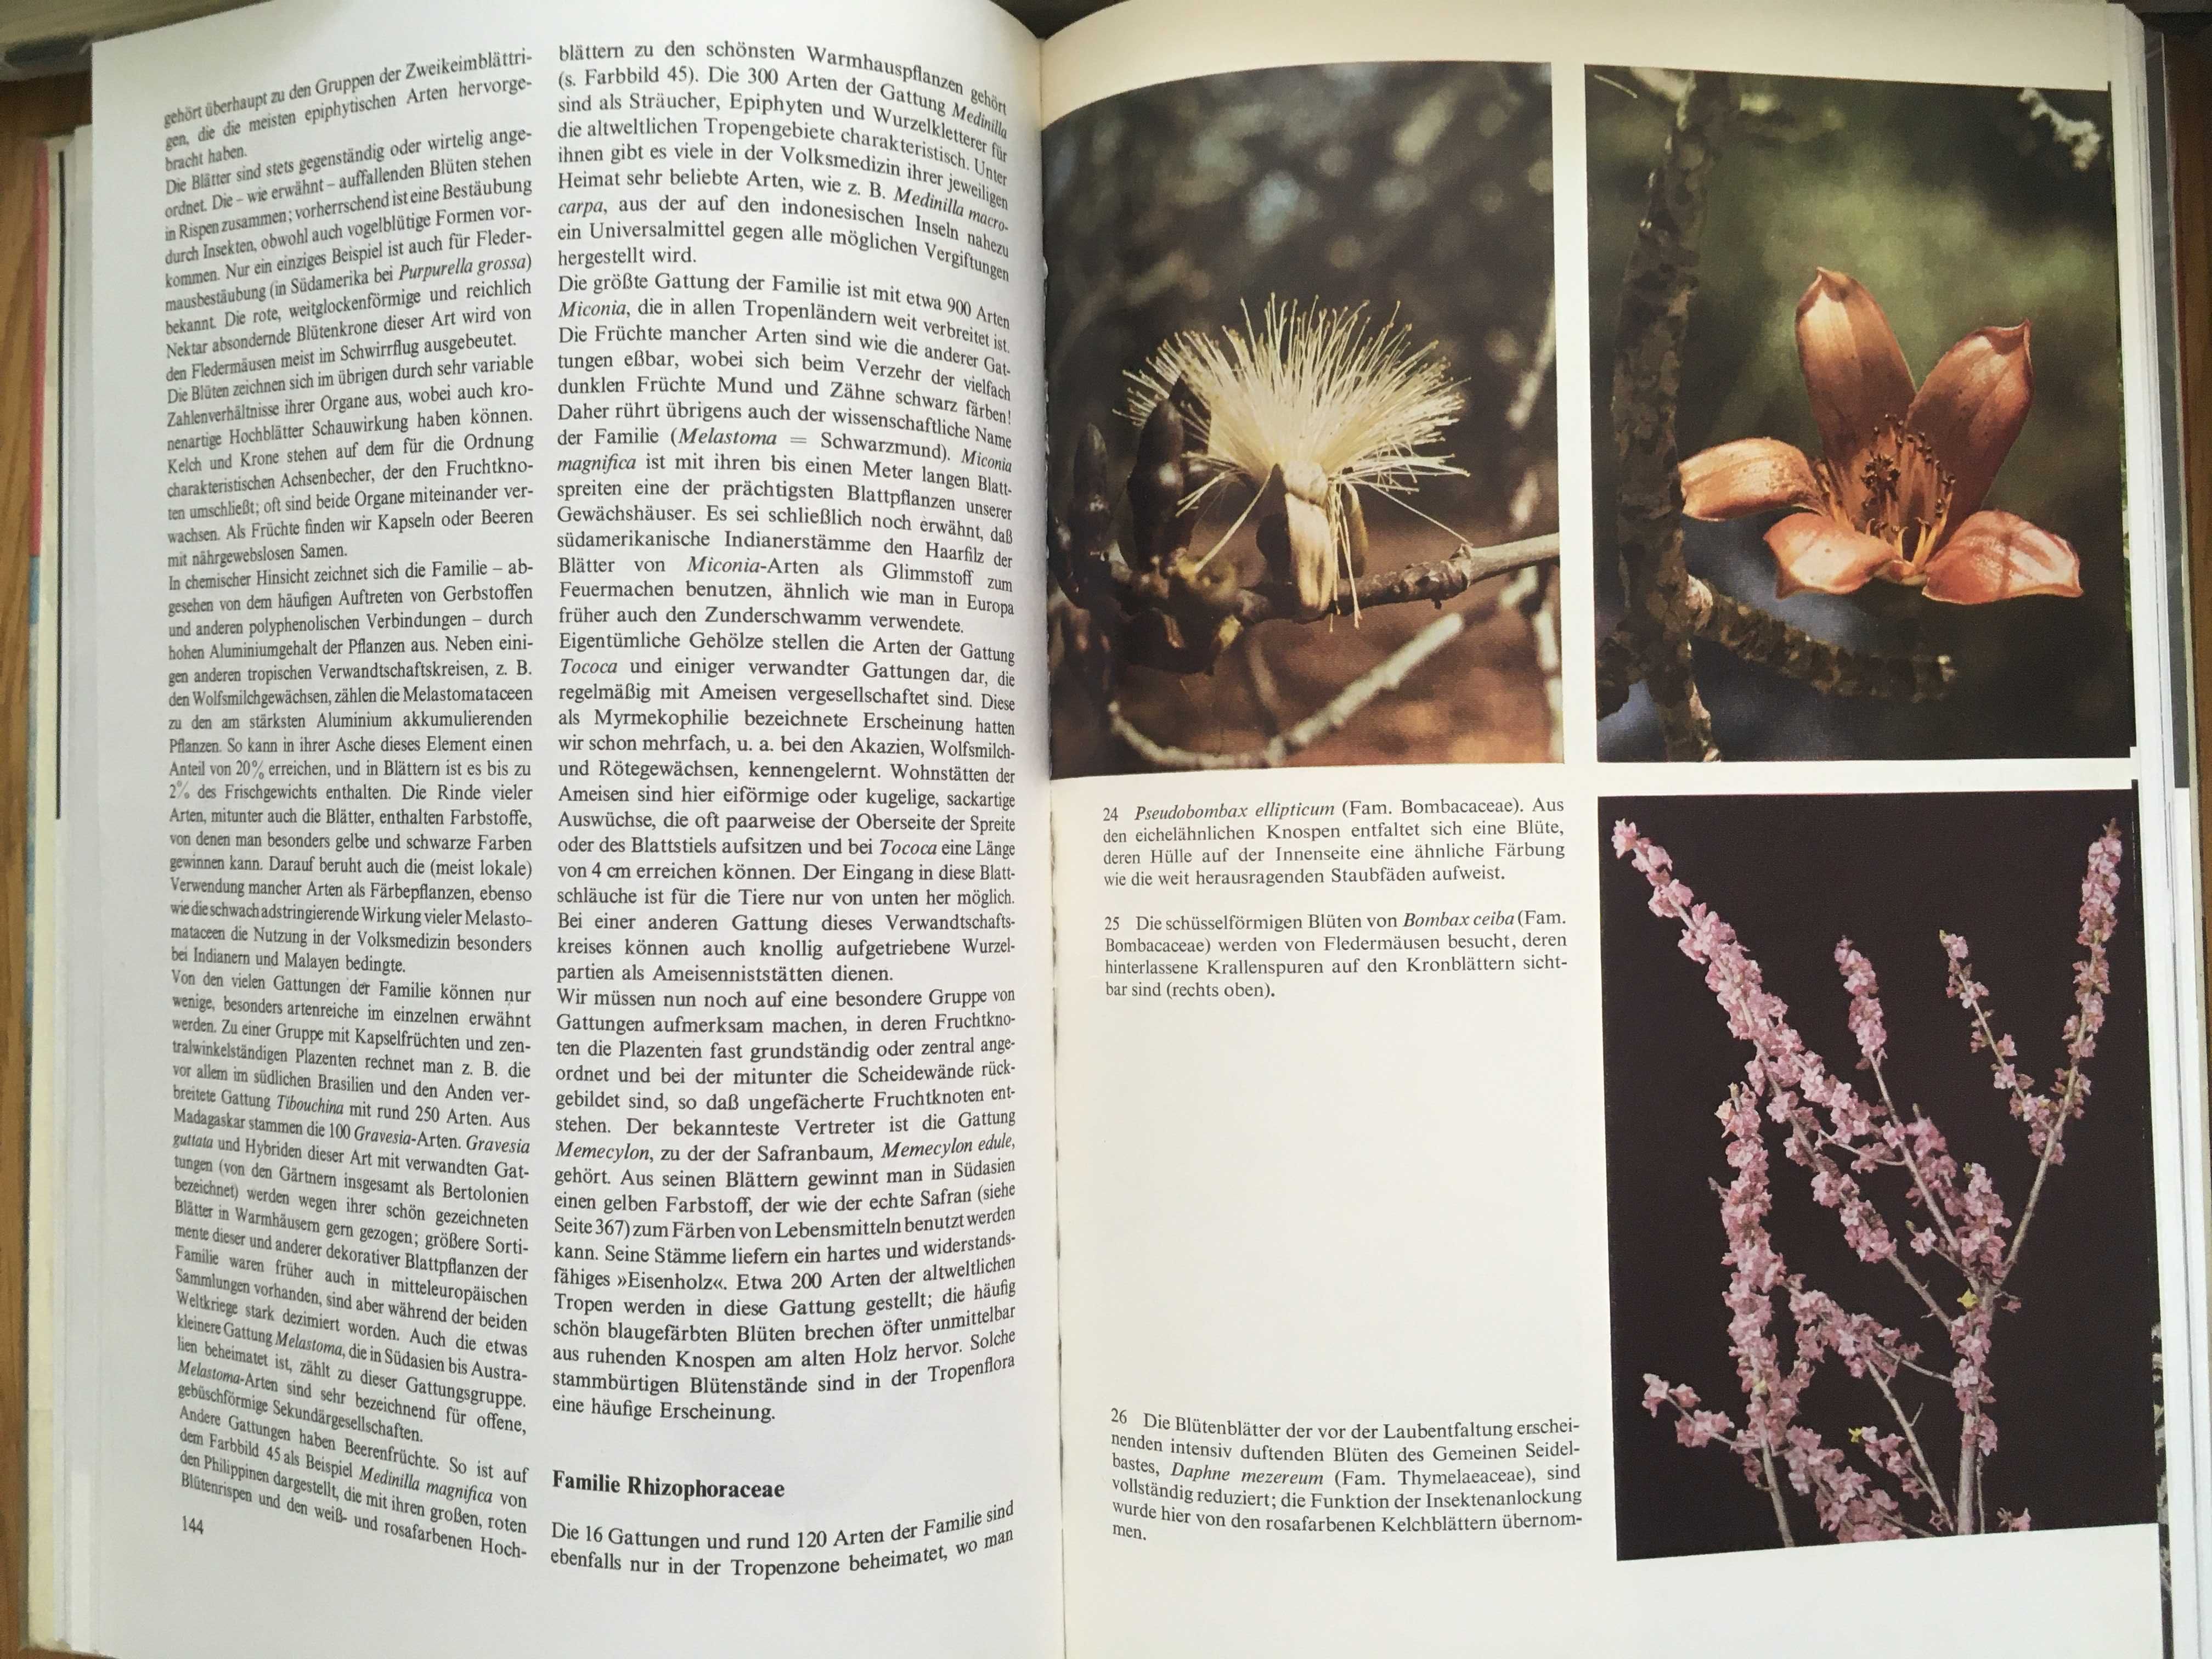 Urania Tierreich, энциклопедия на немецком, растения, птицы, насекомые